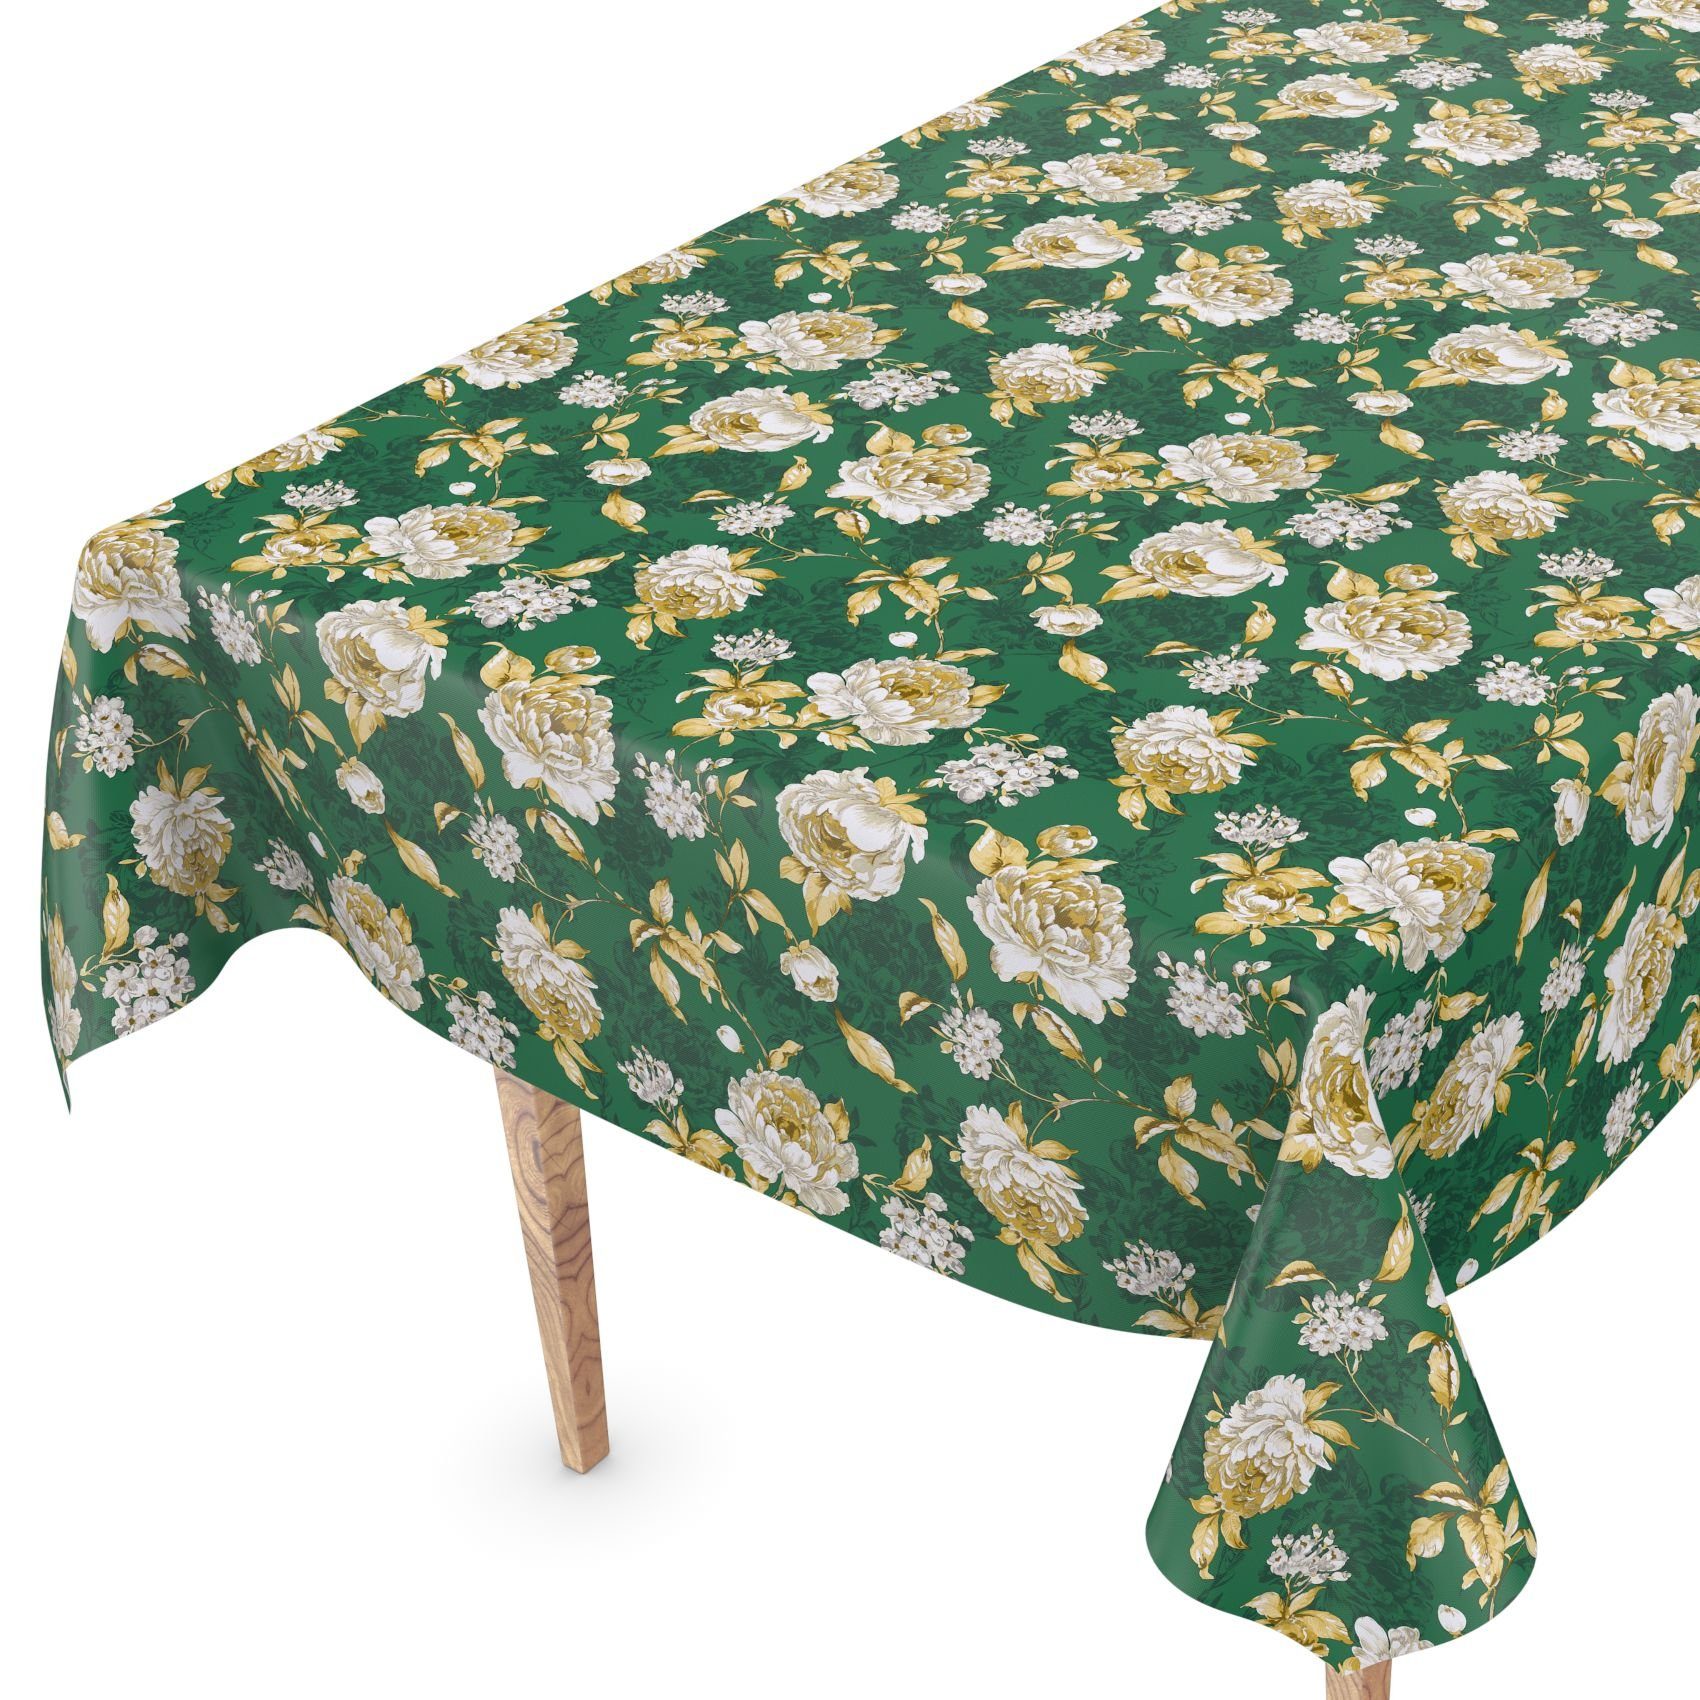 140 Breite ANRO Blumen Geprägt Wachstuch Tischdecke Wasserabweisend Tischdecke Grün Robust cm,